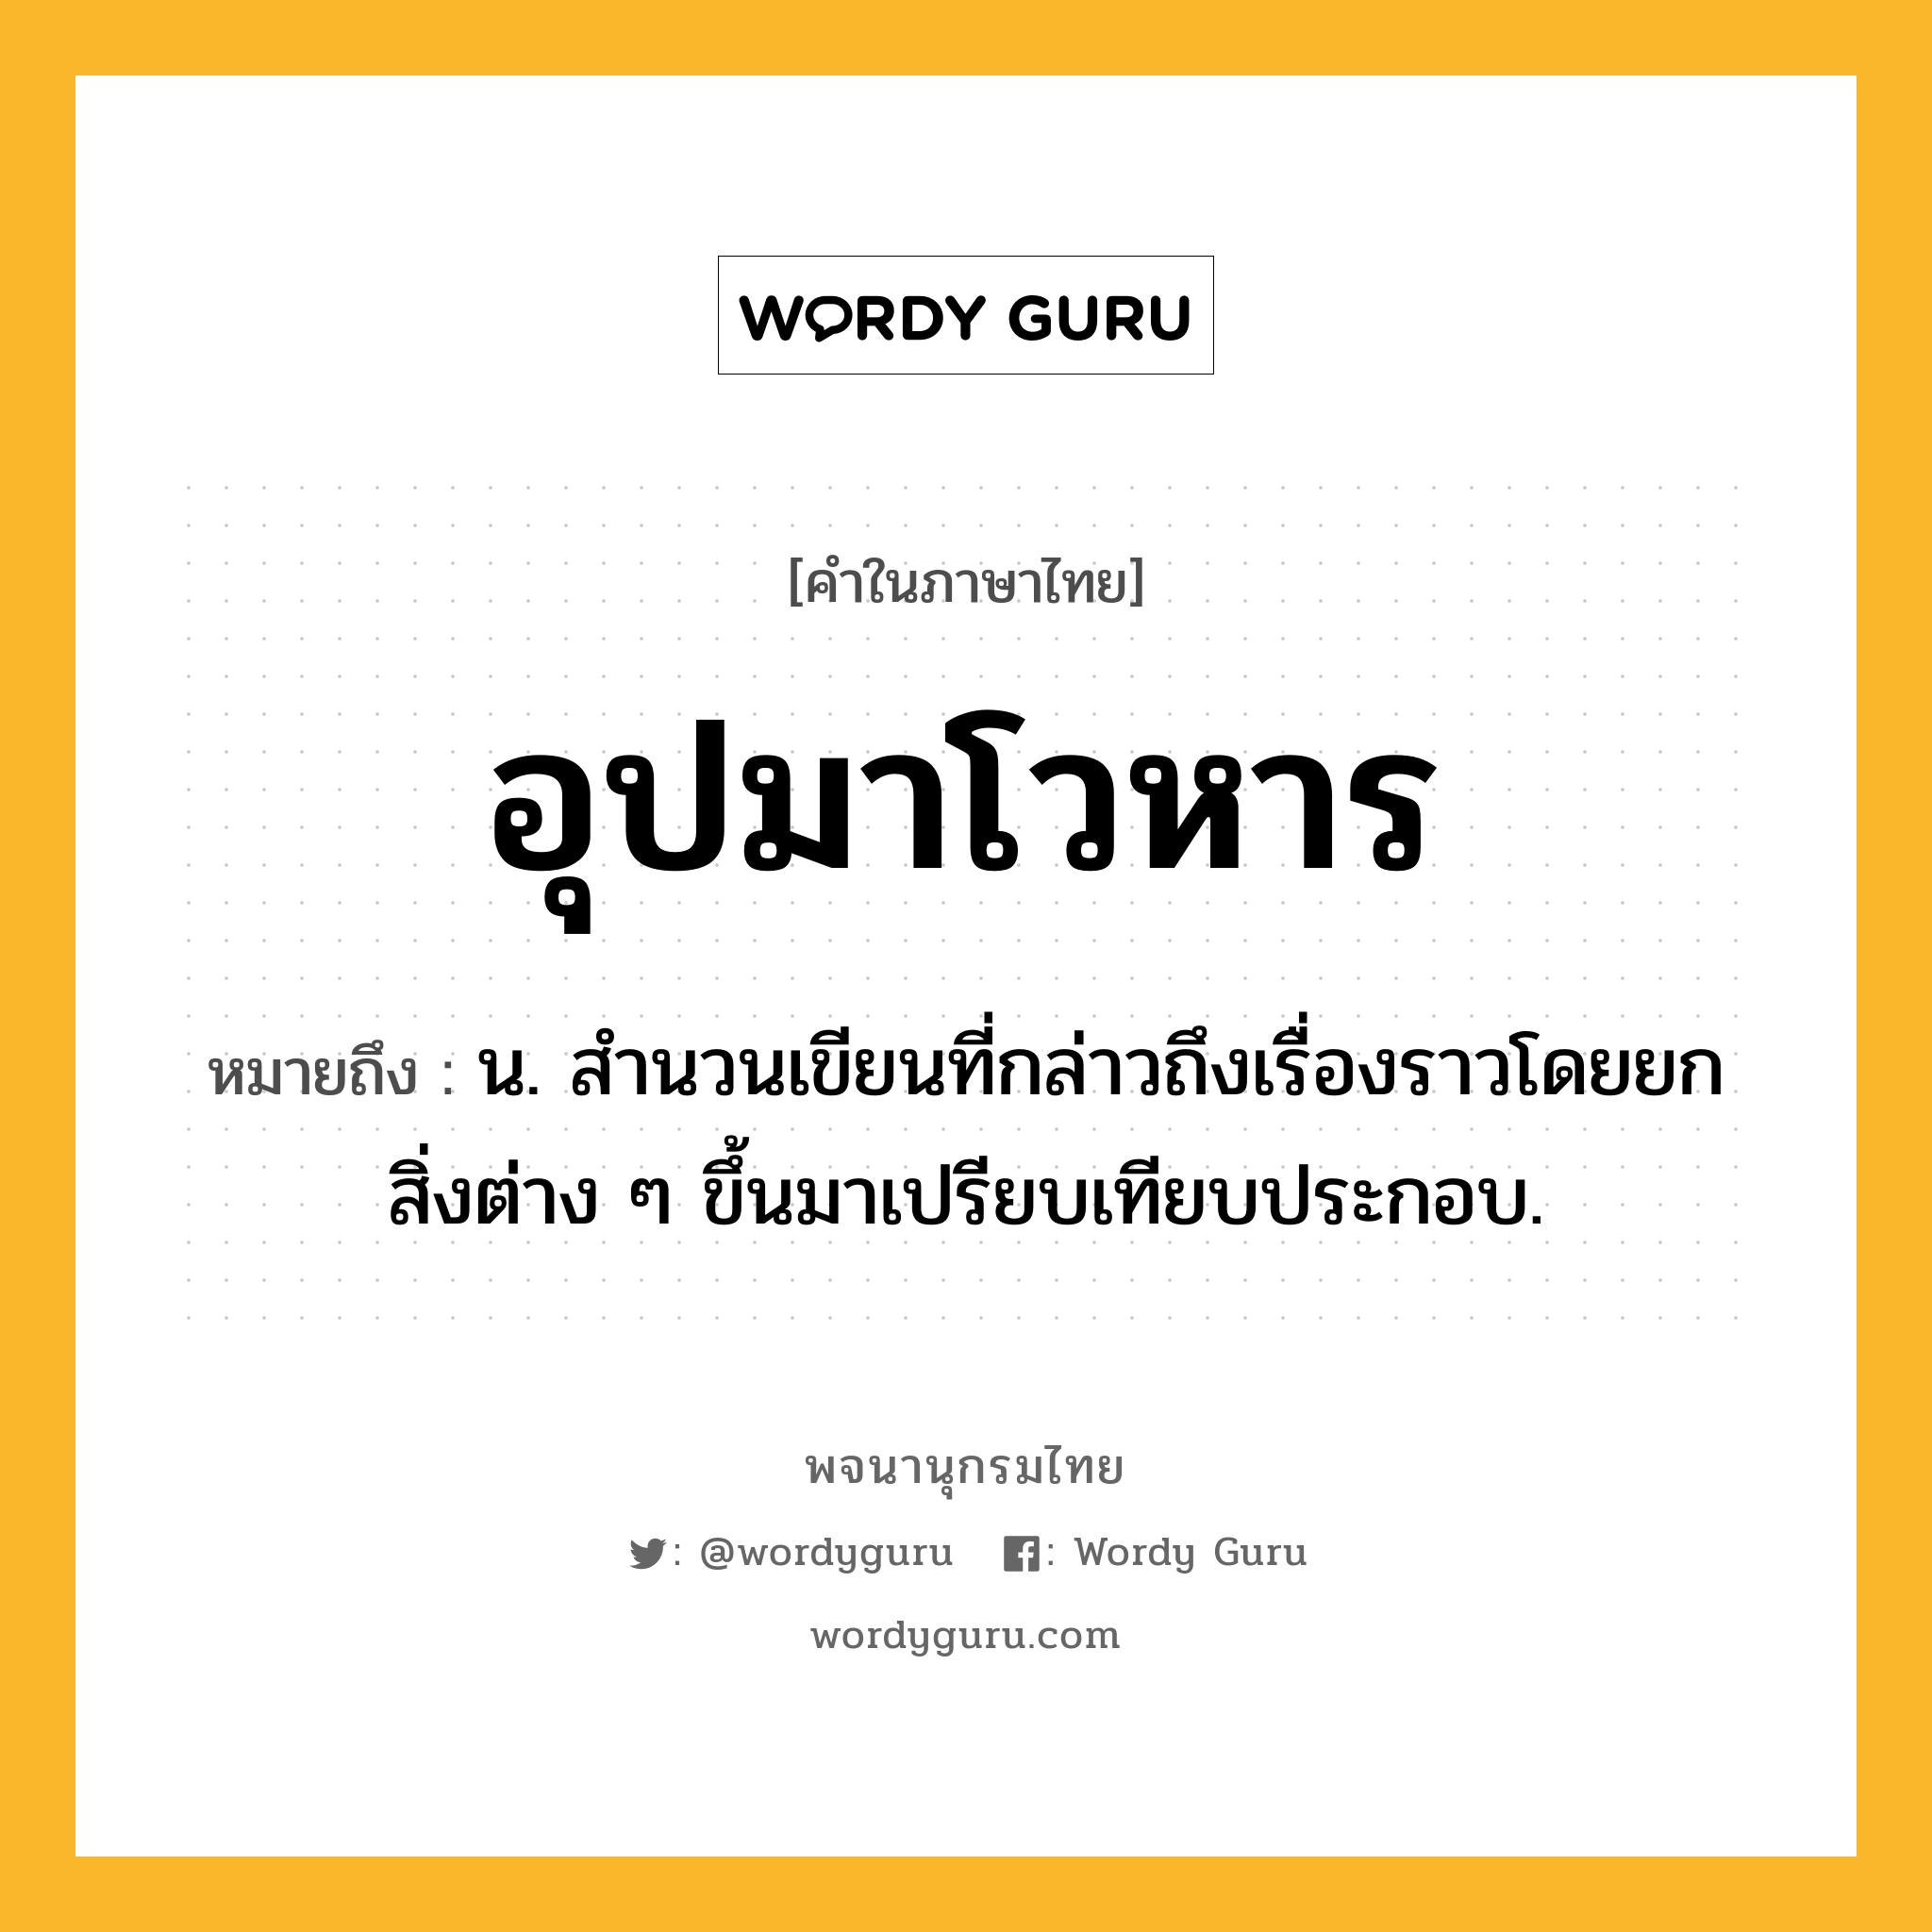 อุปมาโวหาร ความหมาย หมายถึงอะไร?, คำในภาษาไทย อุปมาโวหาร หมายถึง น. สํานวนเขียนที่กล่าวถึงเรื่องราวโดยยกสิ่งต่าง ๆ ขึ้นมาเปรียบเทียบประกอบ.